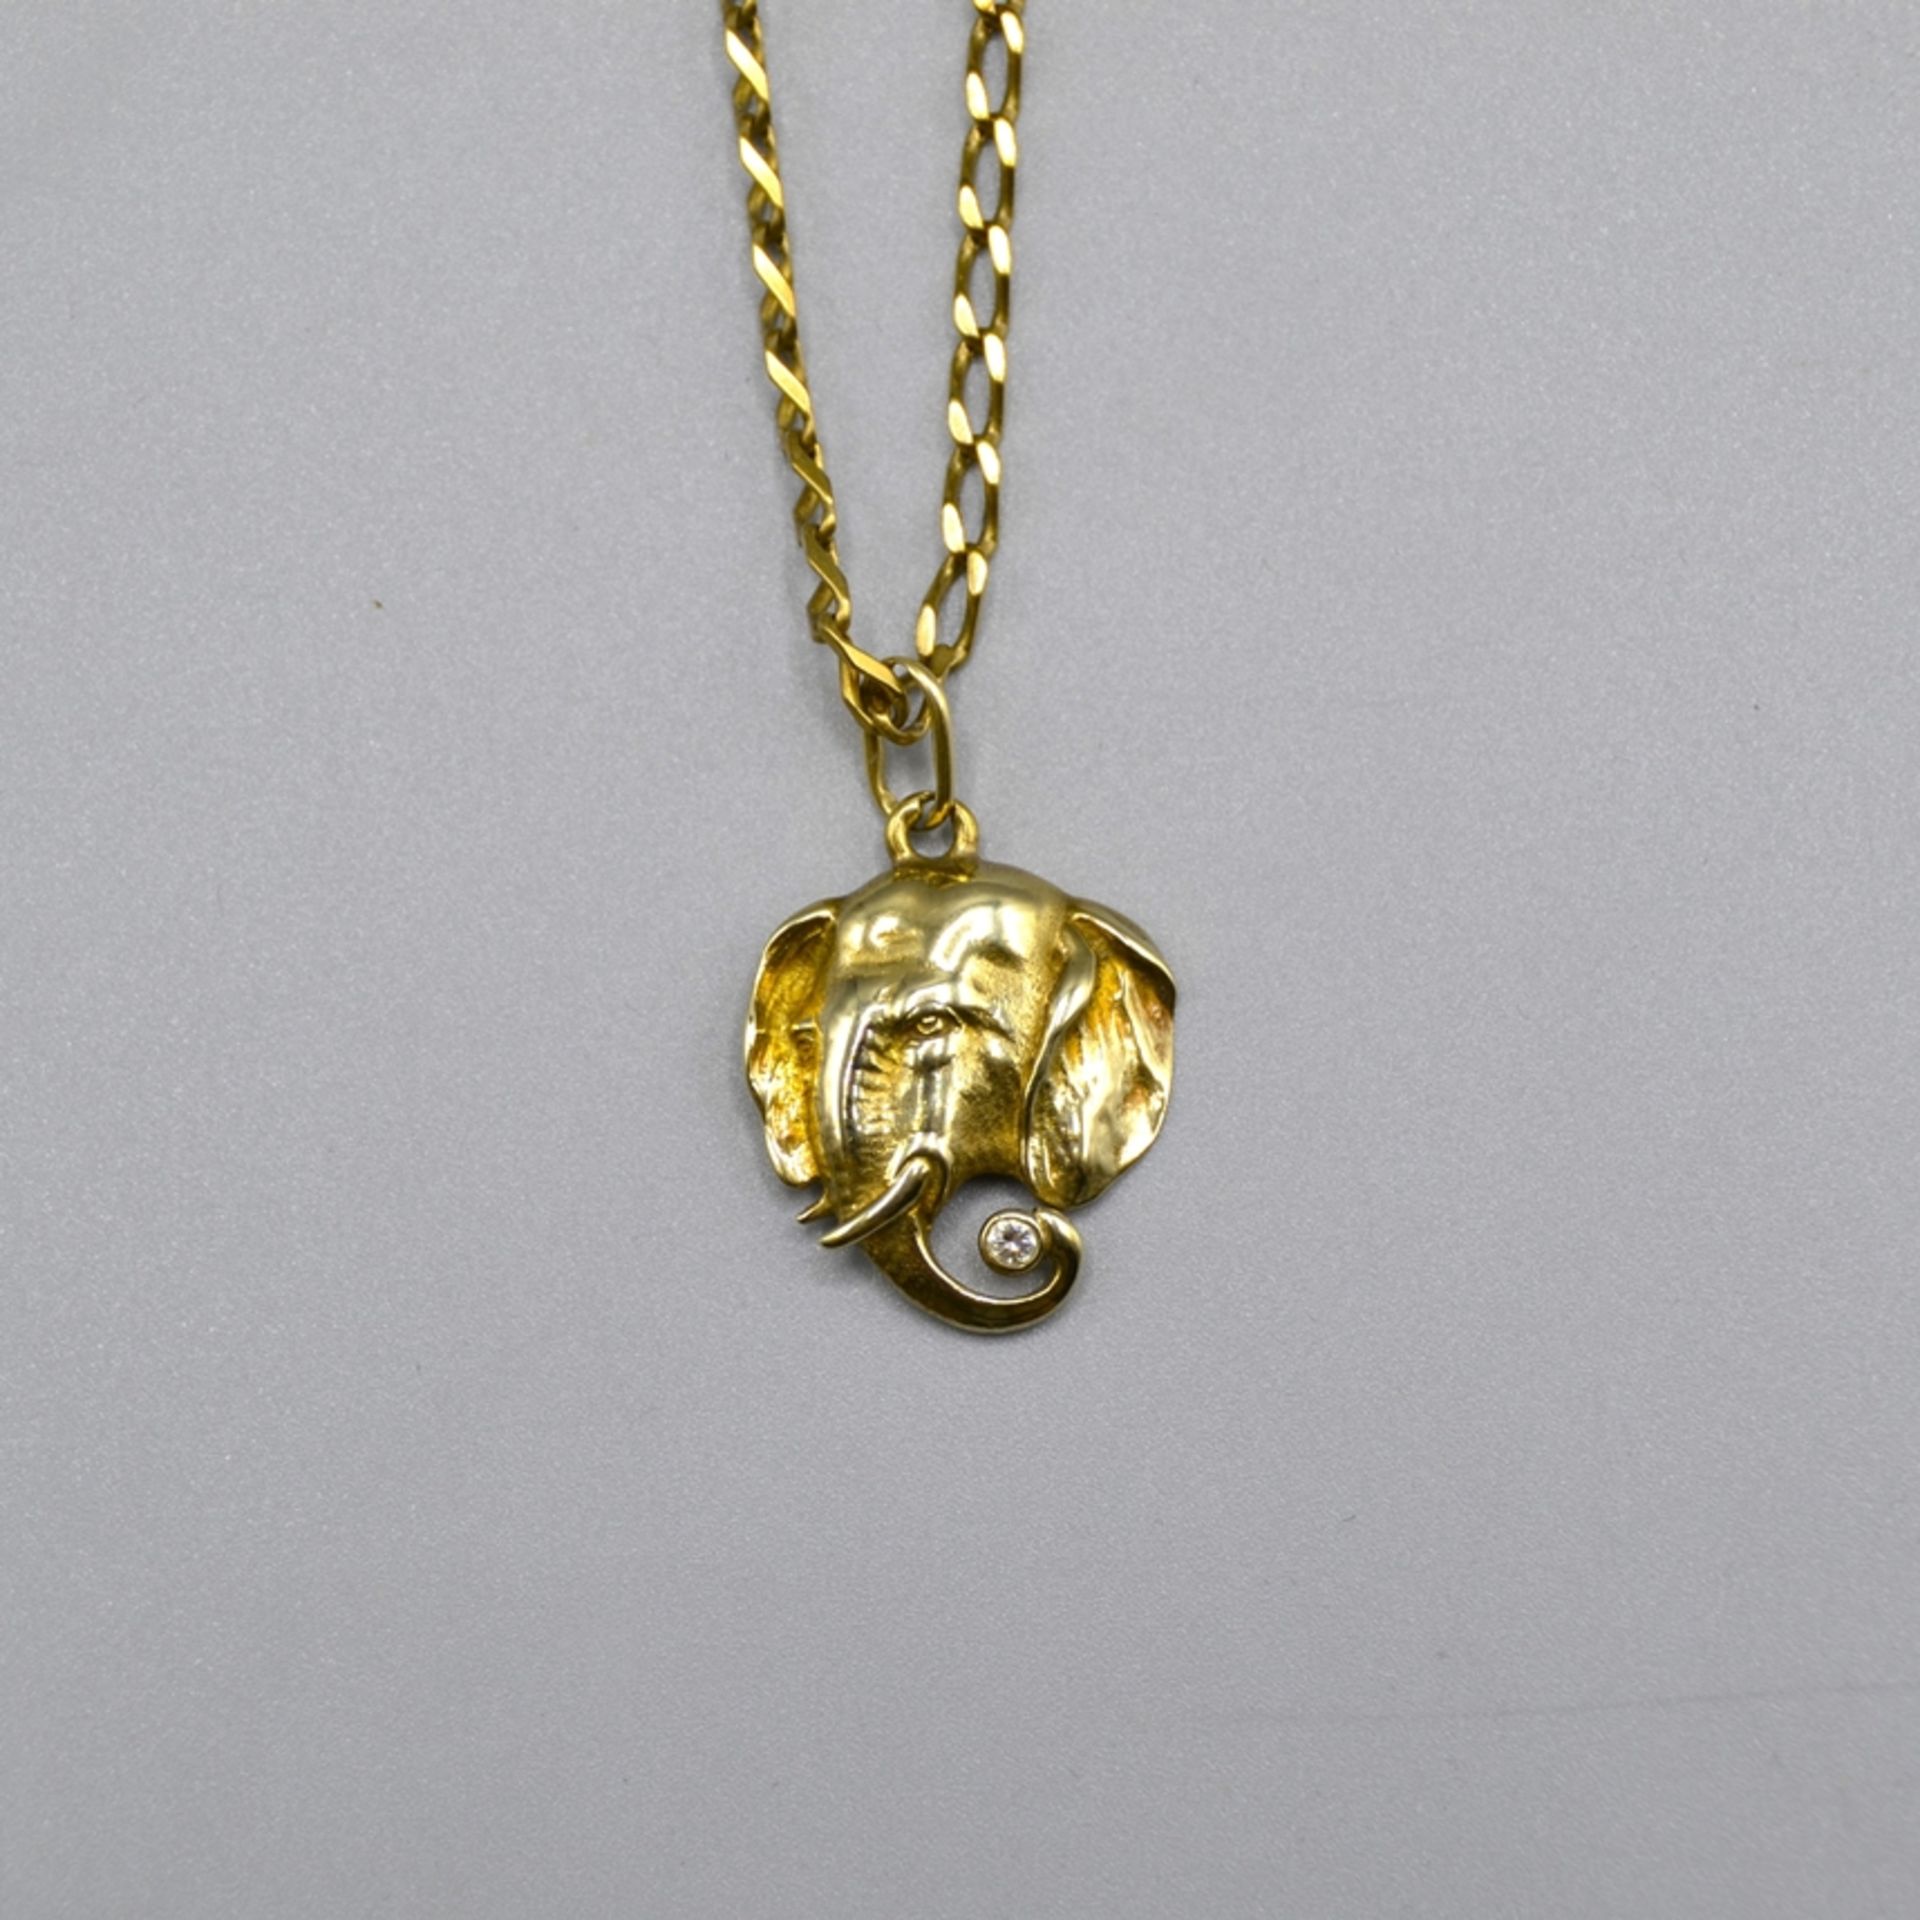 Goldkette 333 mit Elefantenanhänger 333 Gold, Länge Kette ca. 53 cm, zus. 15,2 g